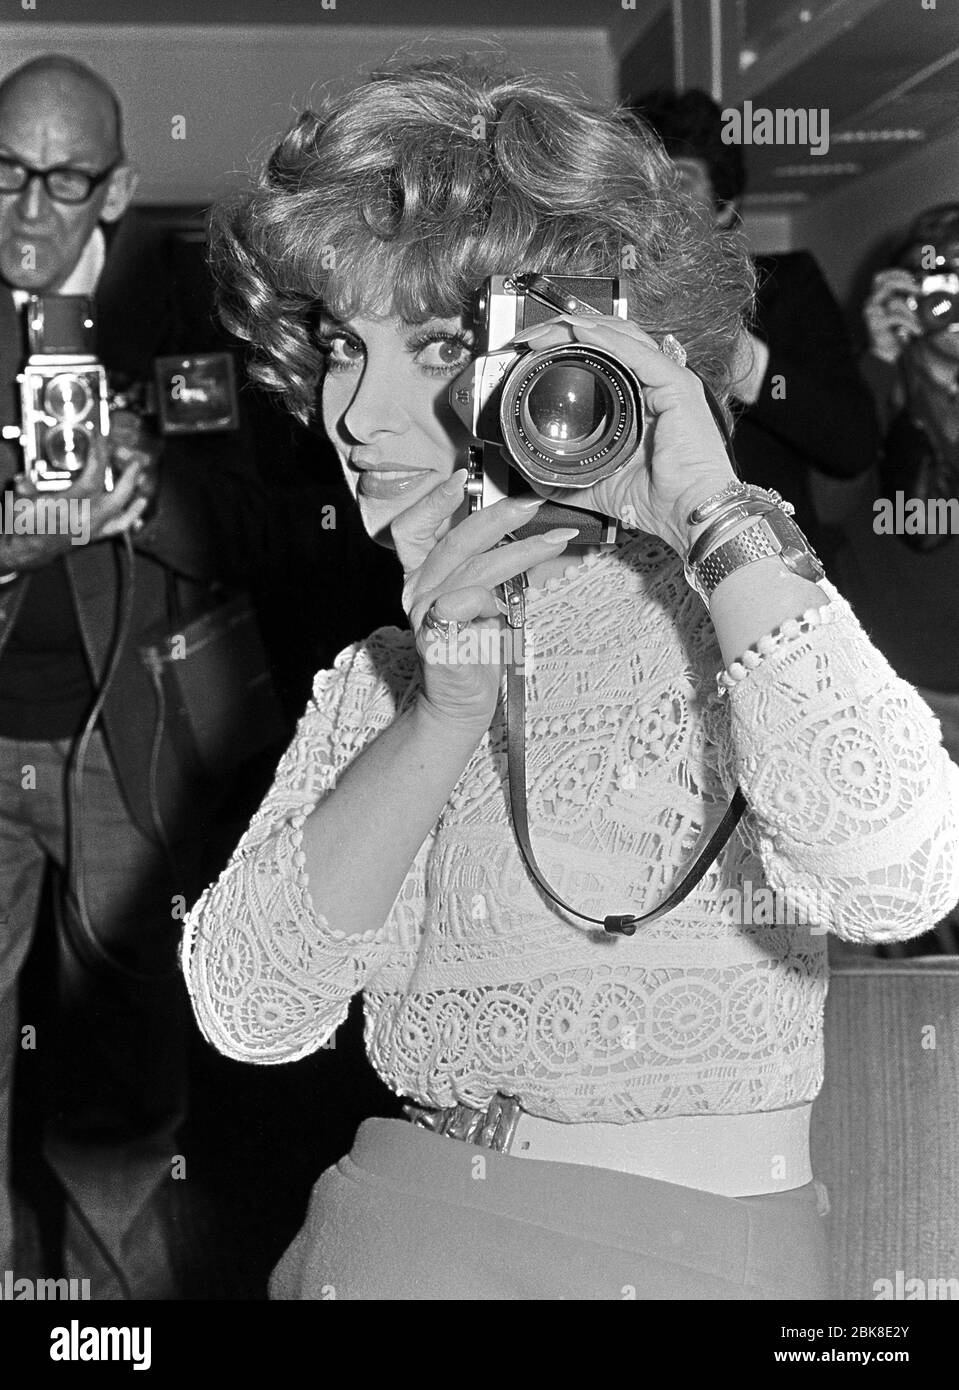 LONDRES, REINO UNIDO. Septiembre 1974: La actriz italiana Gina Lollobrigida promueve su libro de fotografía 'Italia Mia' en Londres. Archivo de la foto © Paul Smith/Featurreflash Foto de stock